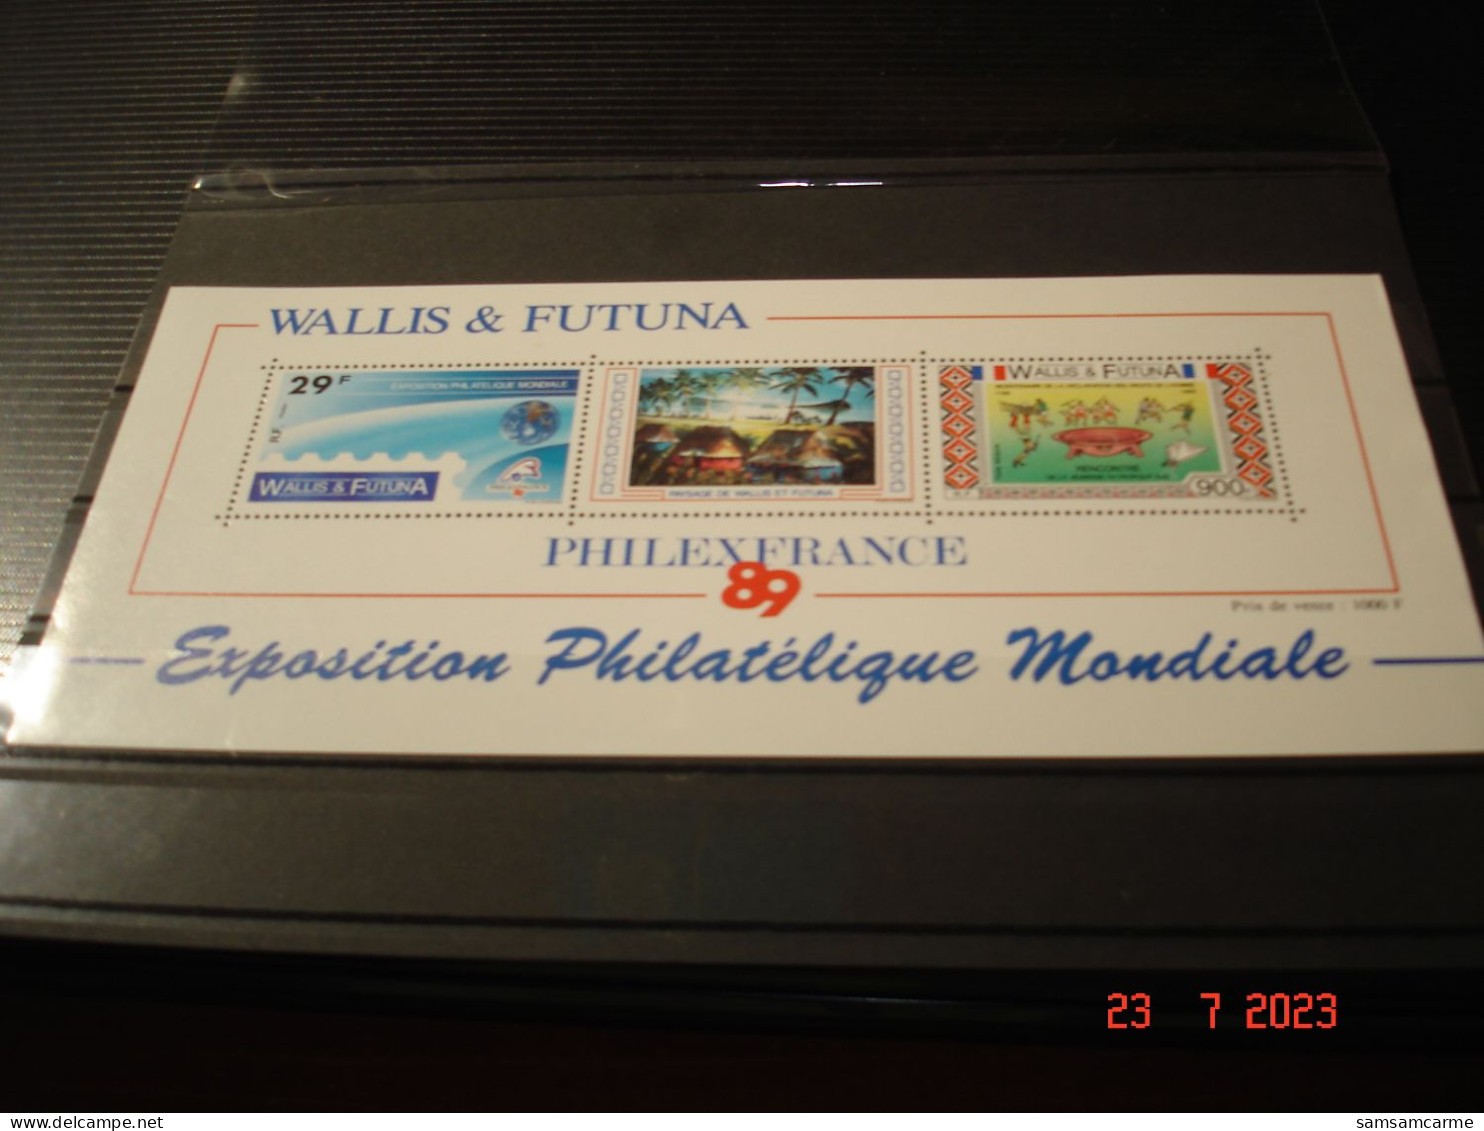 WALLIS ET FUTUNA    ANNEE  1989     BLOC FEUILLET NEUF N° 4    "  PHILEX FANCE 89 "  EXPOSITION PHILATELIQUE MONDIALE - Blocs-feuillets